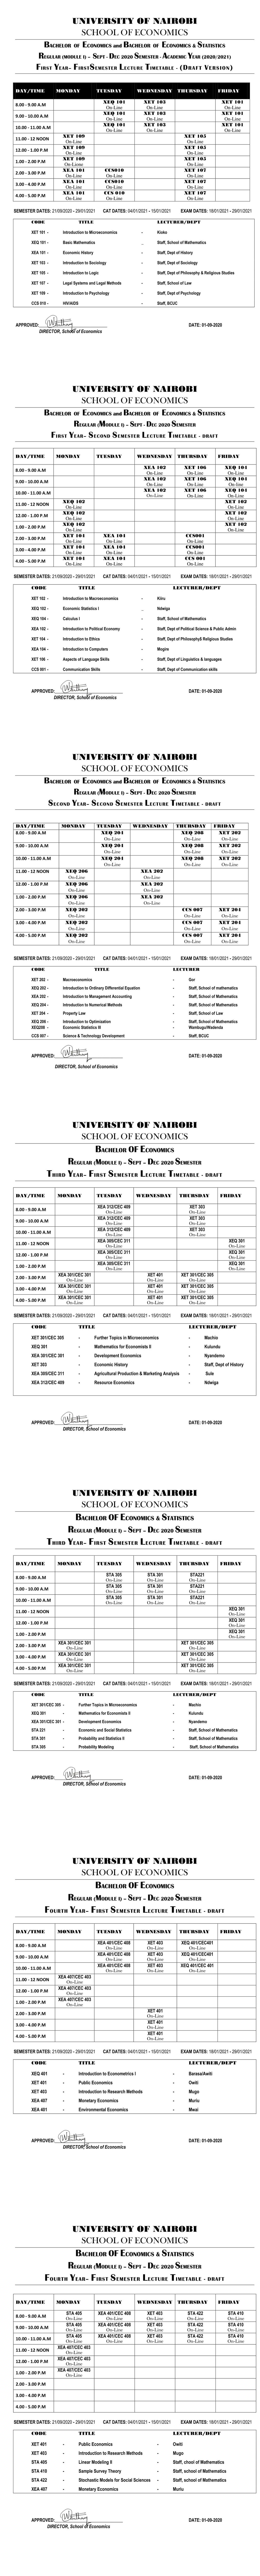 Economics-Module I-Lecture-Timetable-Sept-20-Jan-21